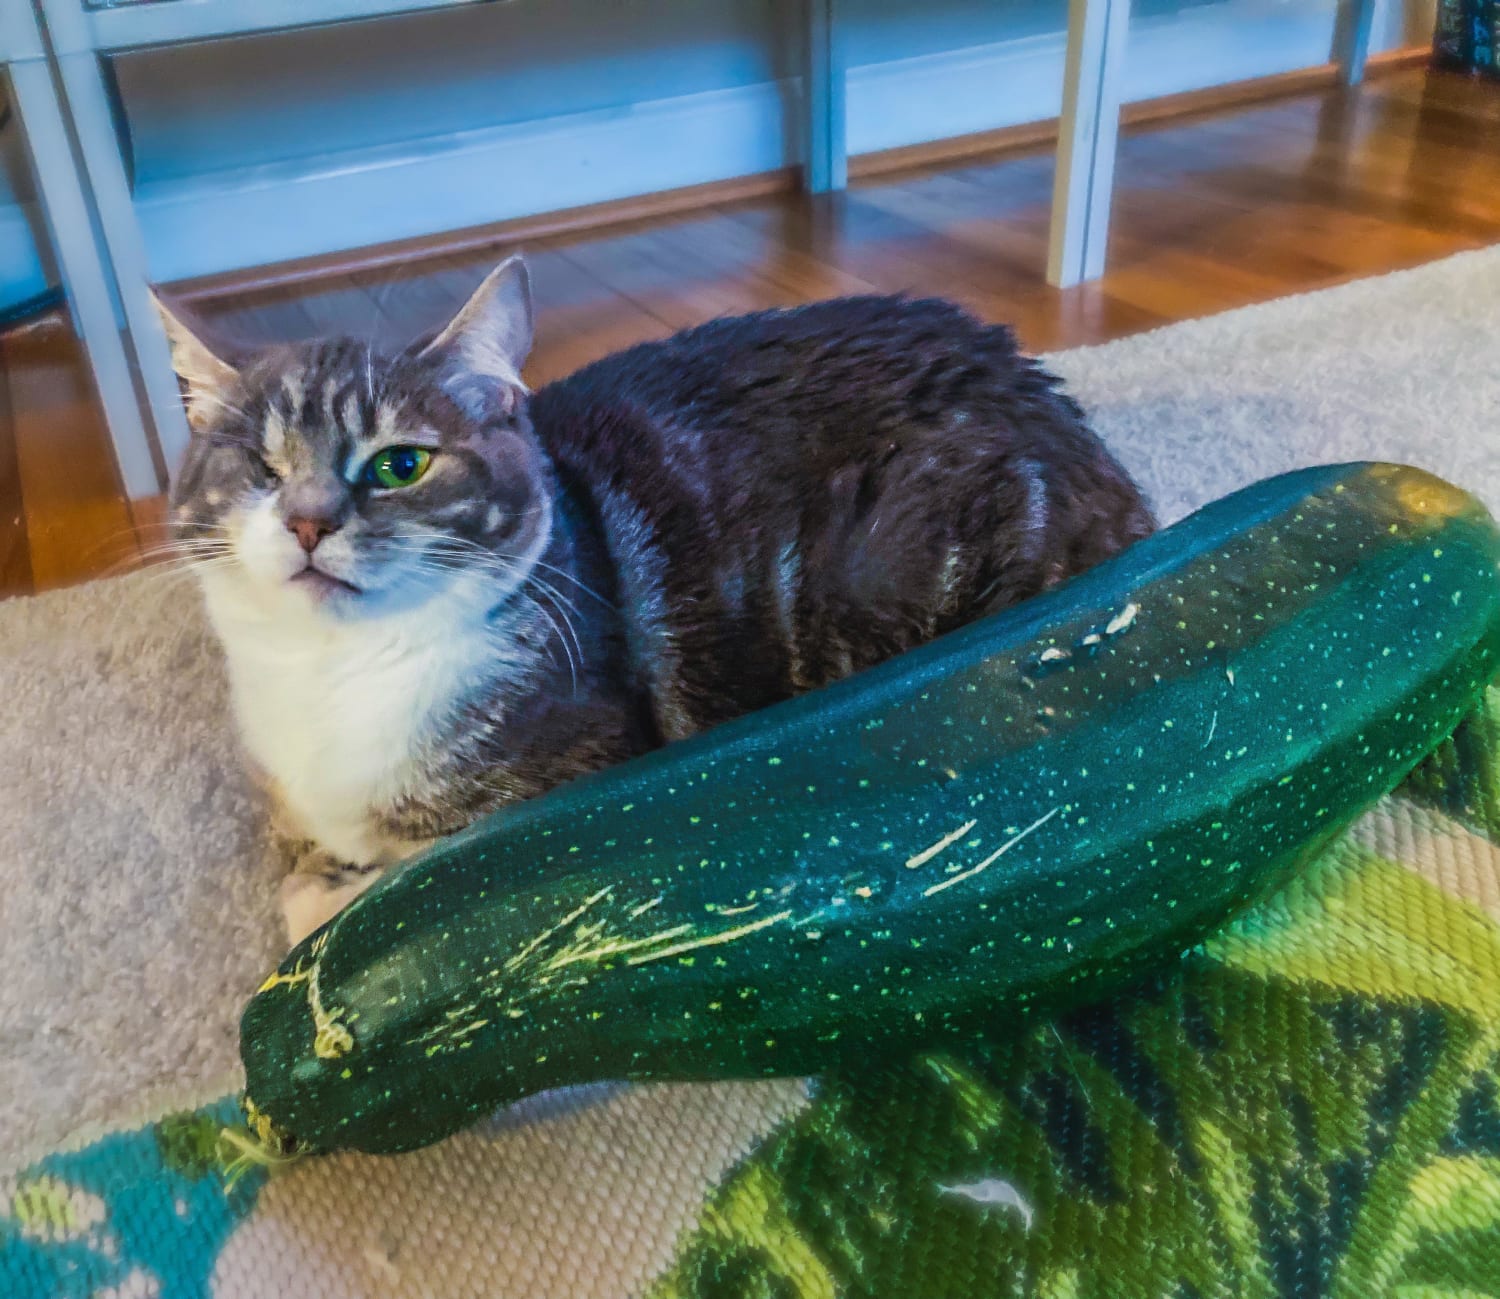 Chief zucchini inspector